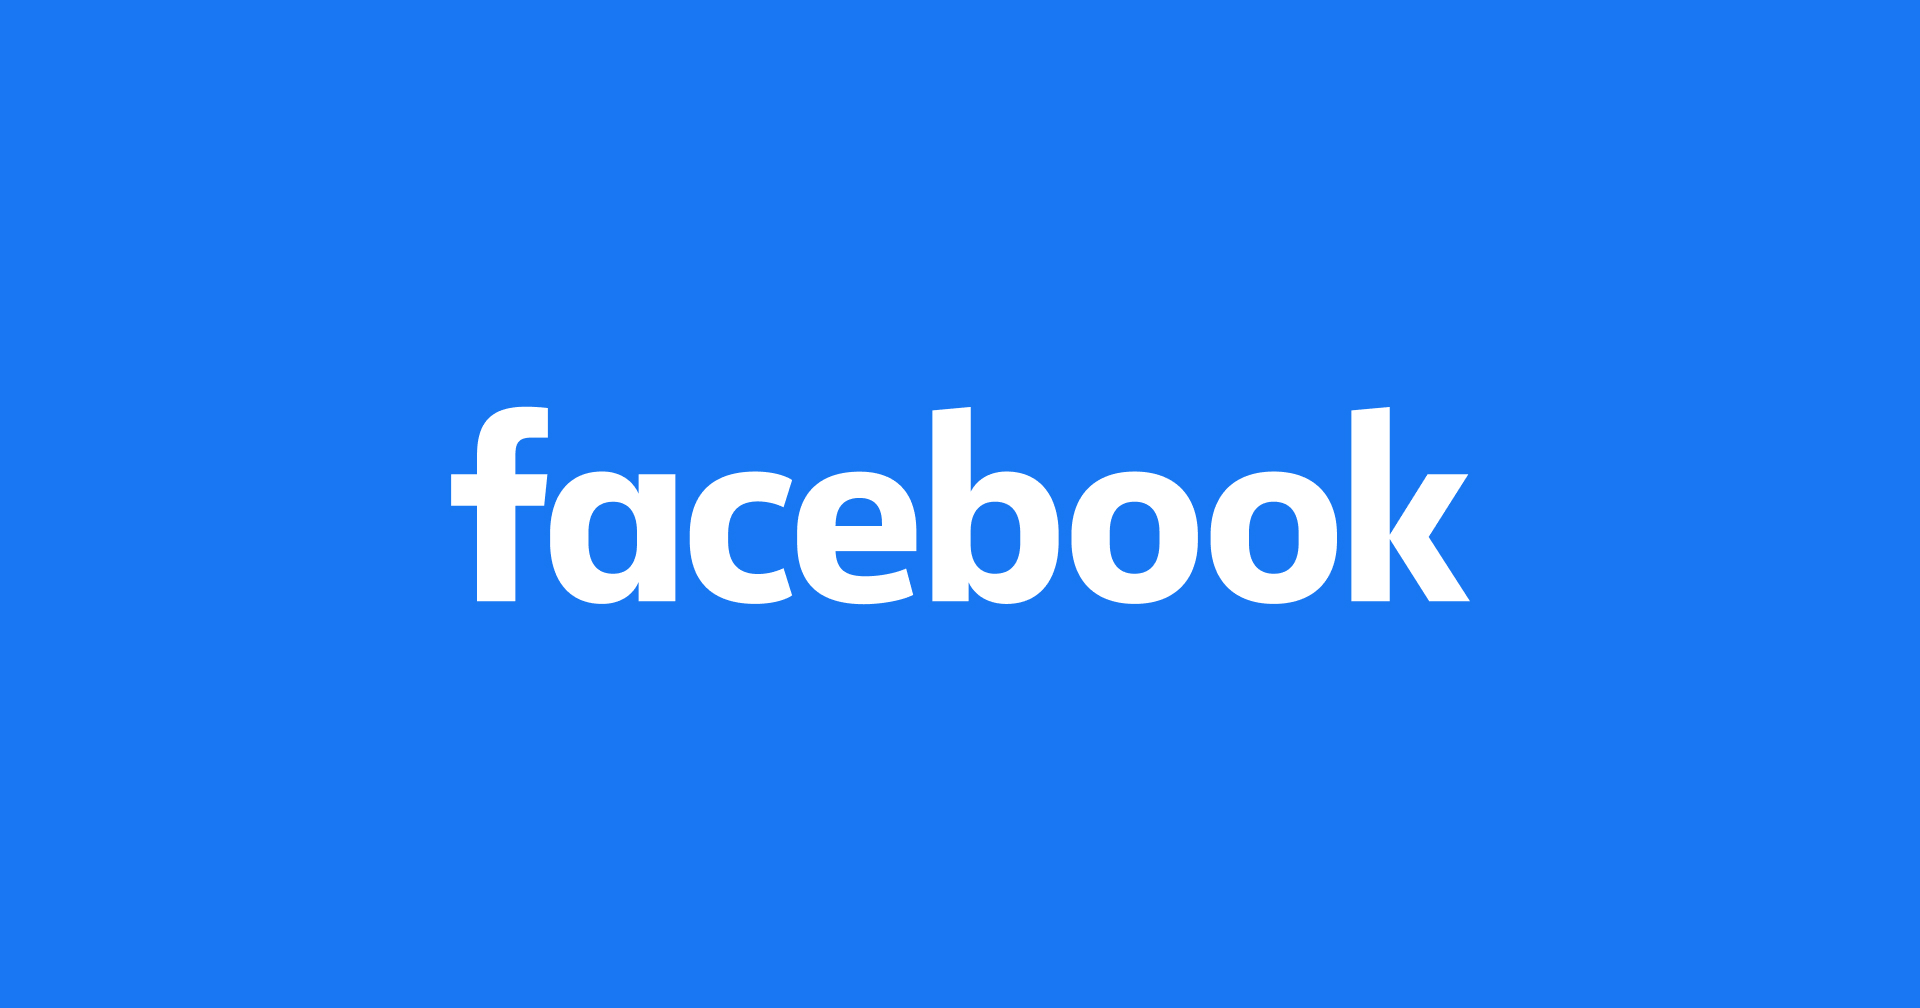 Facebook ผงาดขึ้นเป็นบริษัทที่มีมูลค่า 1 ล้านล้านเหรียญ